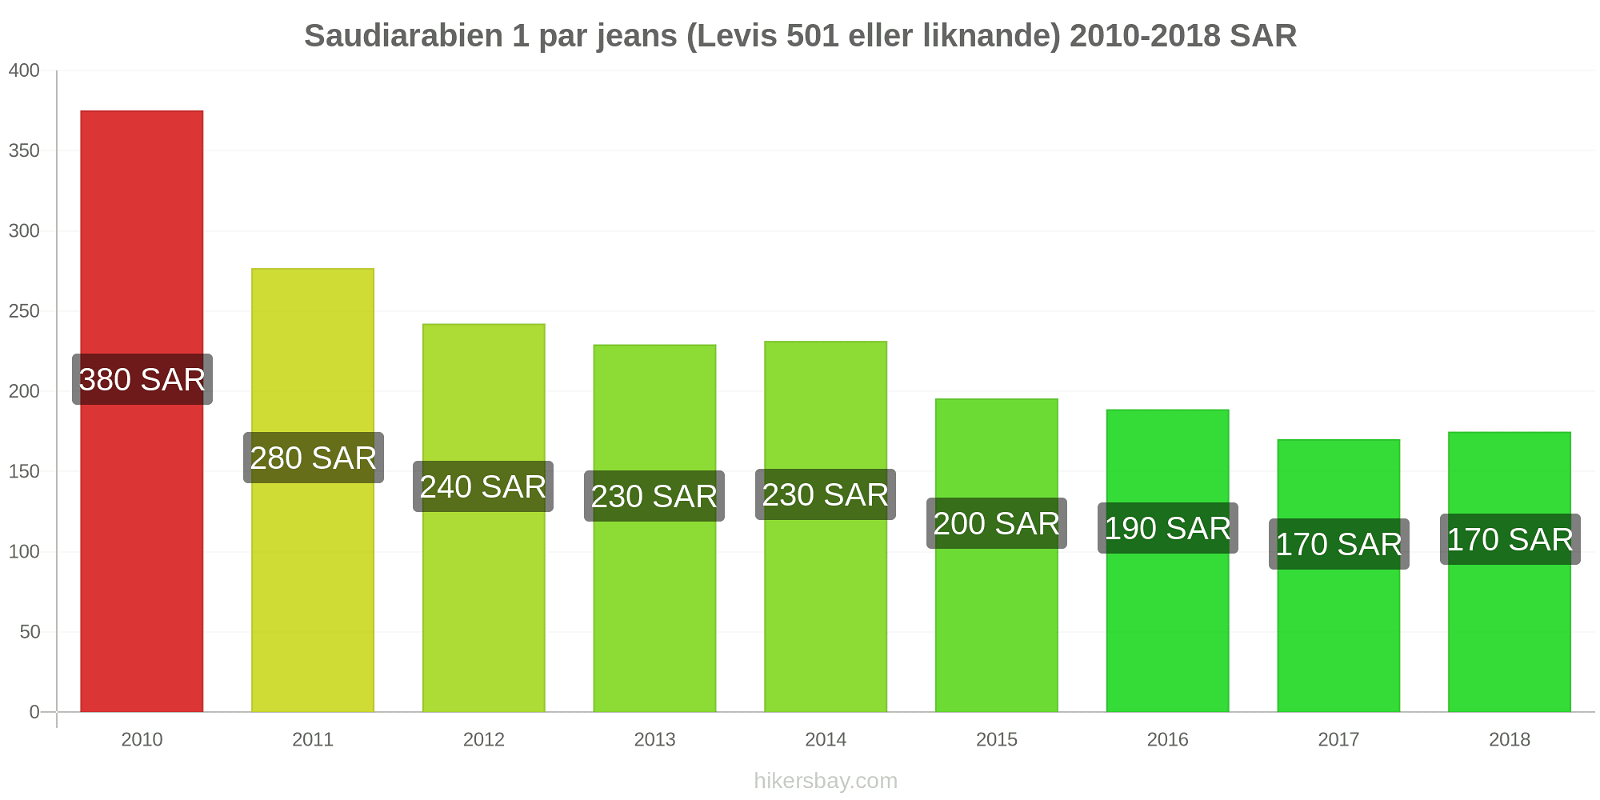 Saudiarabien prisändringar 1 par jeans (Levis 501 eller liknande) hikersbay.com